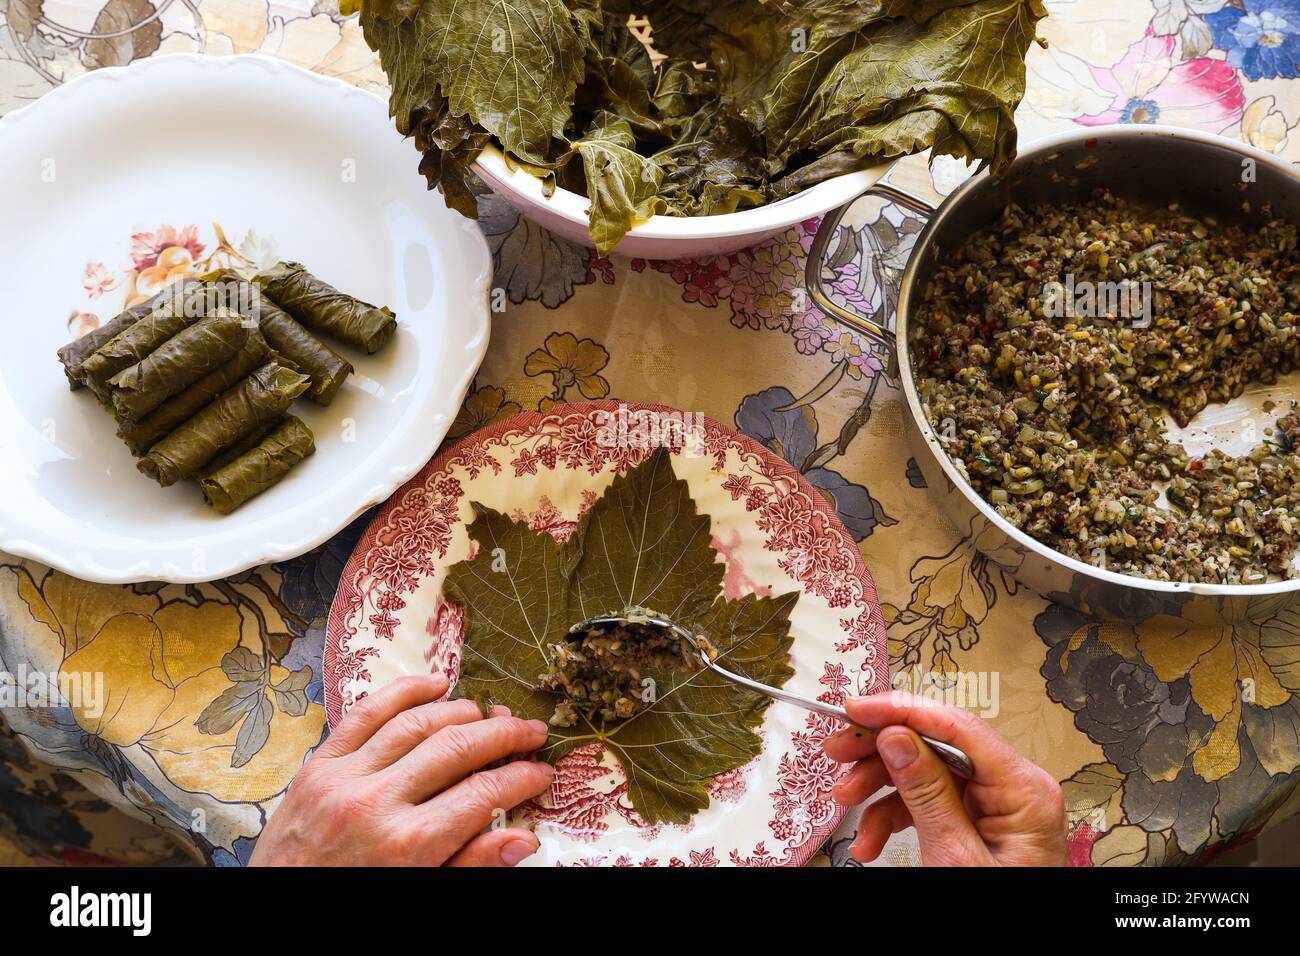 Femme mains, préparer des feuilles de raisin farcies traditionnelles turques et grecques, concept alimentaire. Banque D'Images